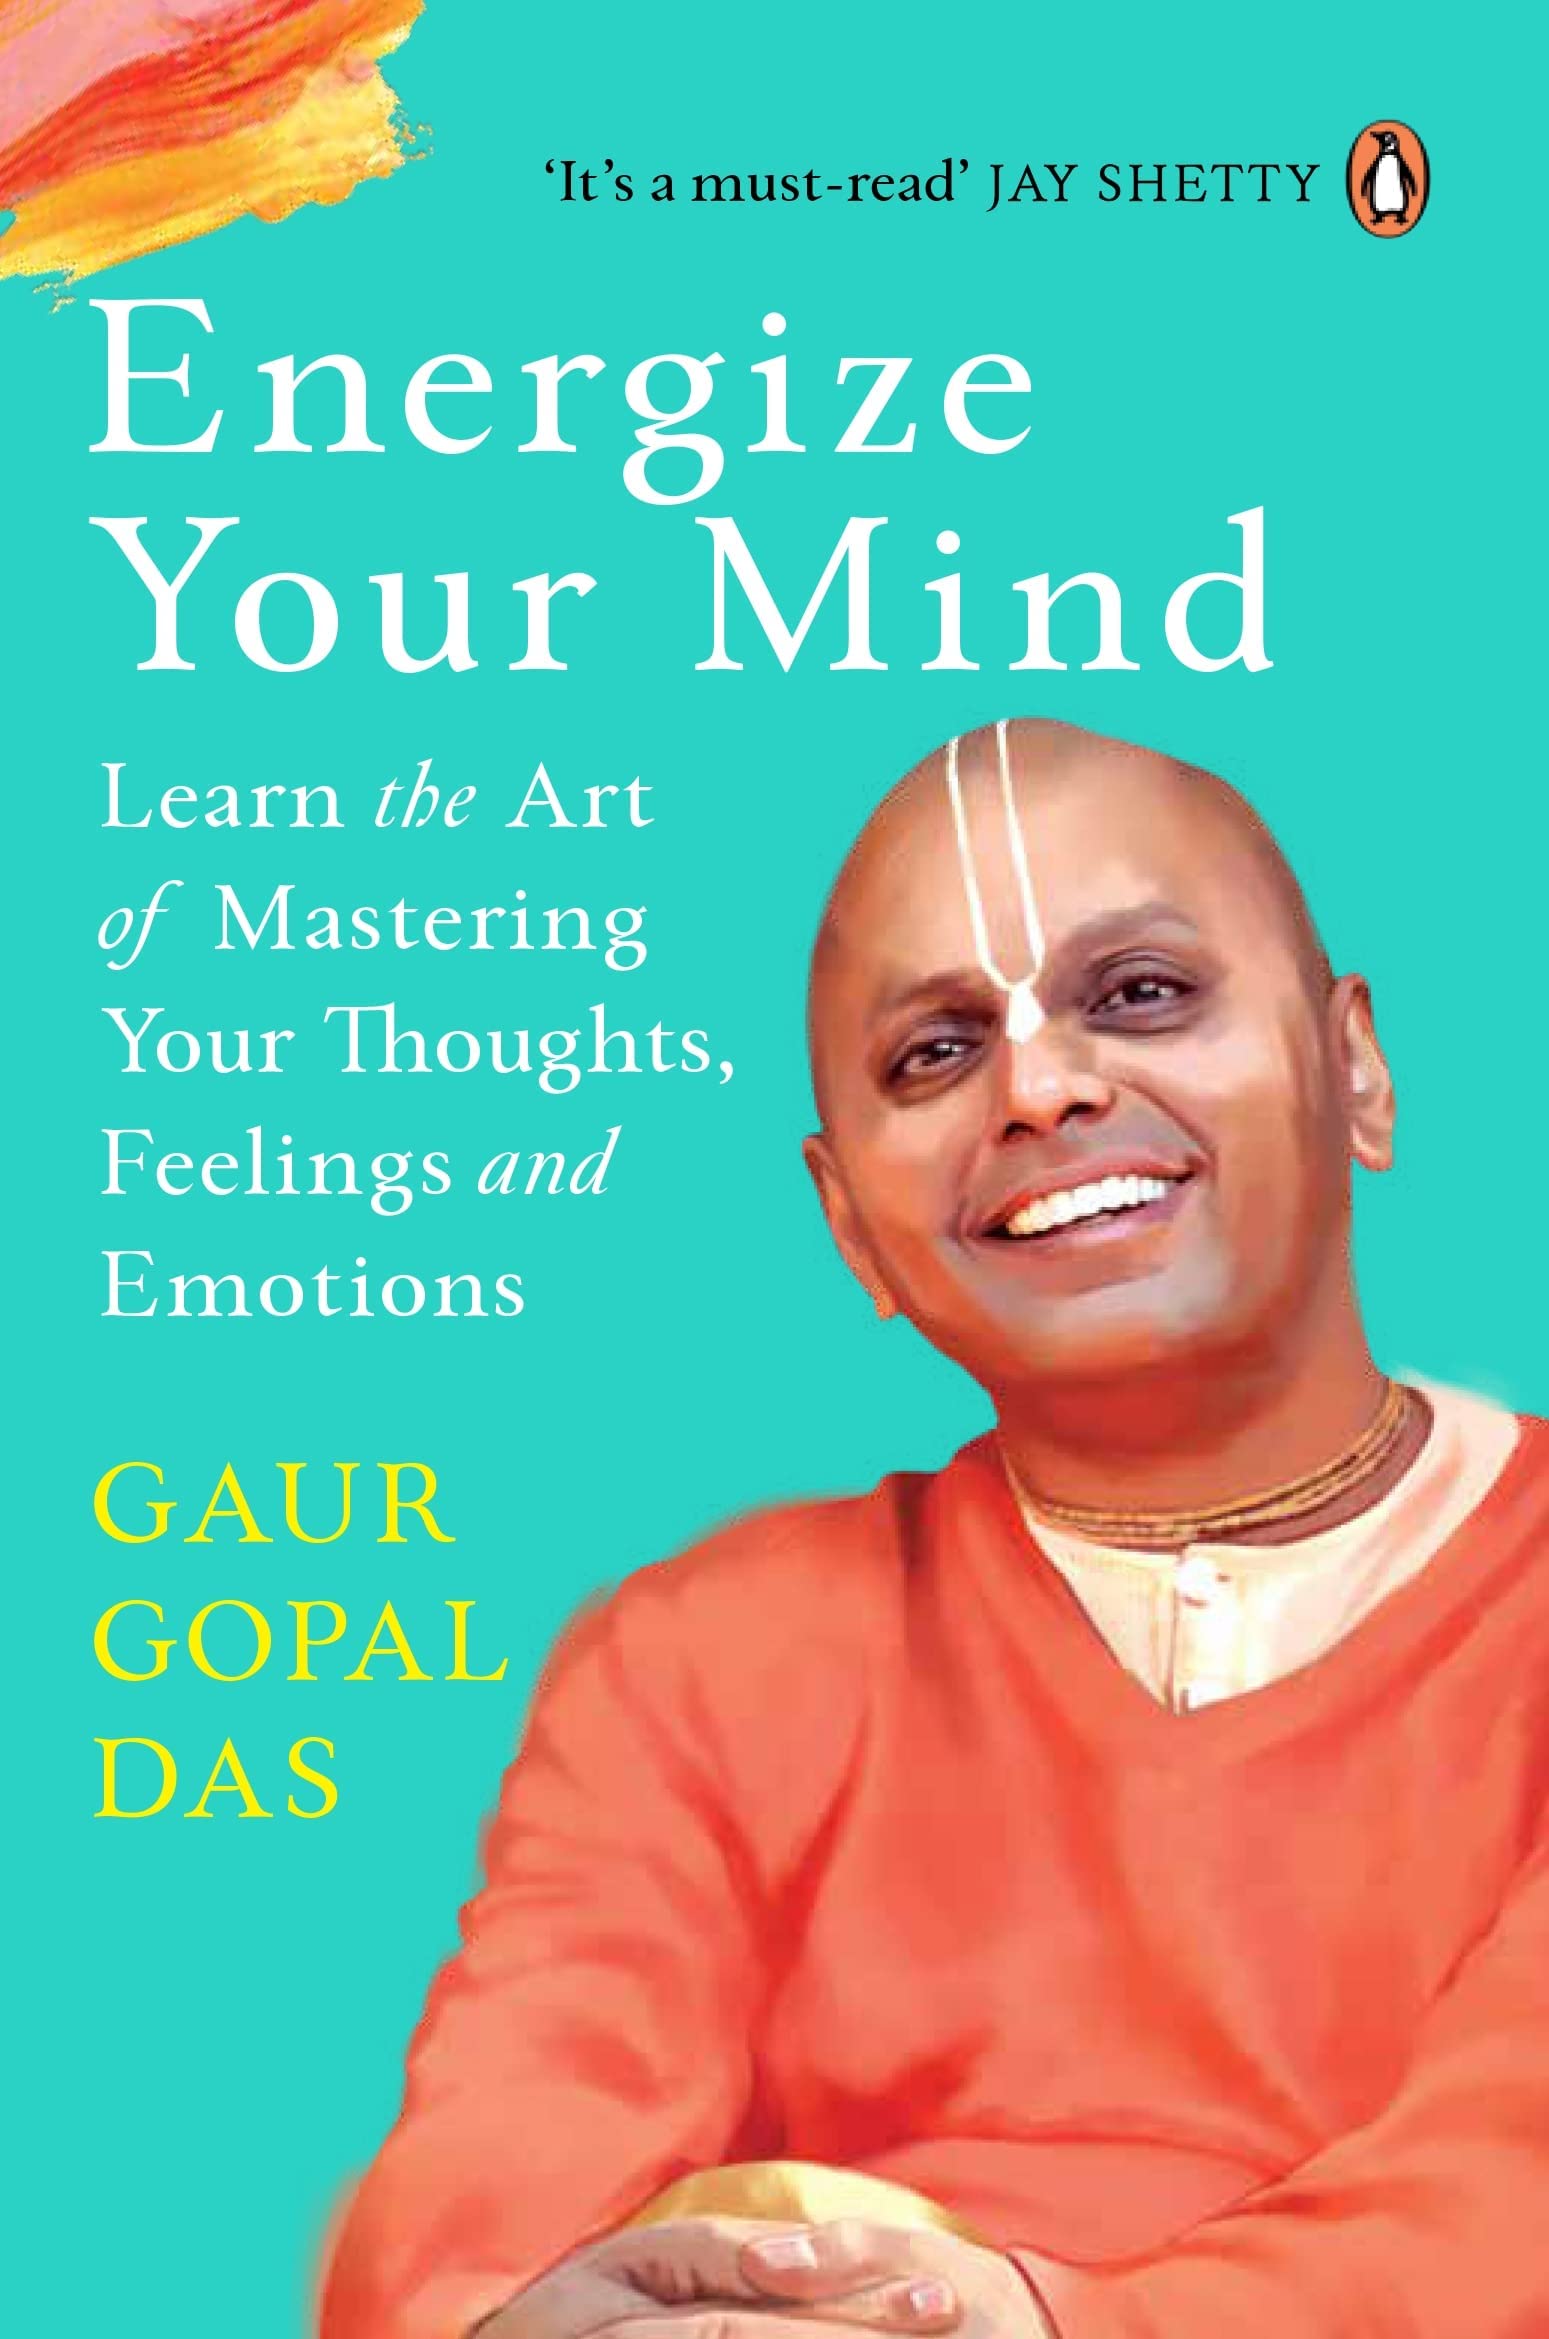 Energize Your Mind by Gaur Gopal Das at BIBLIONEPAL Bookstore